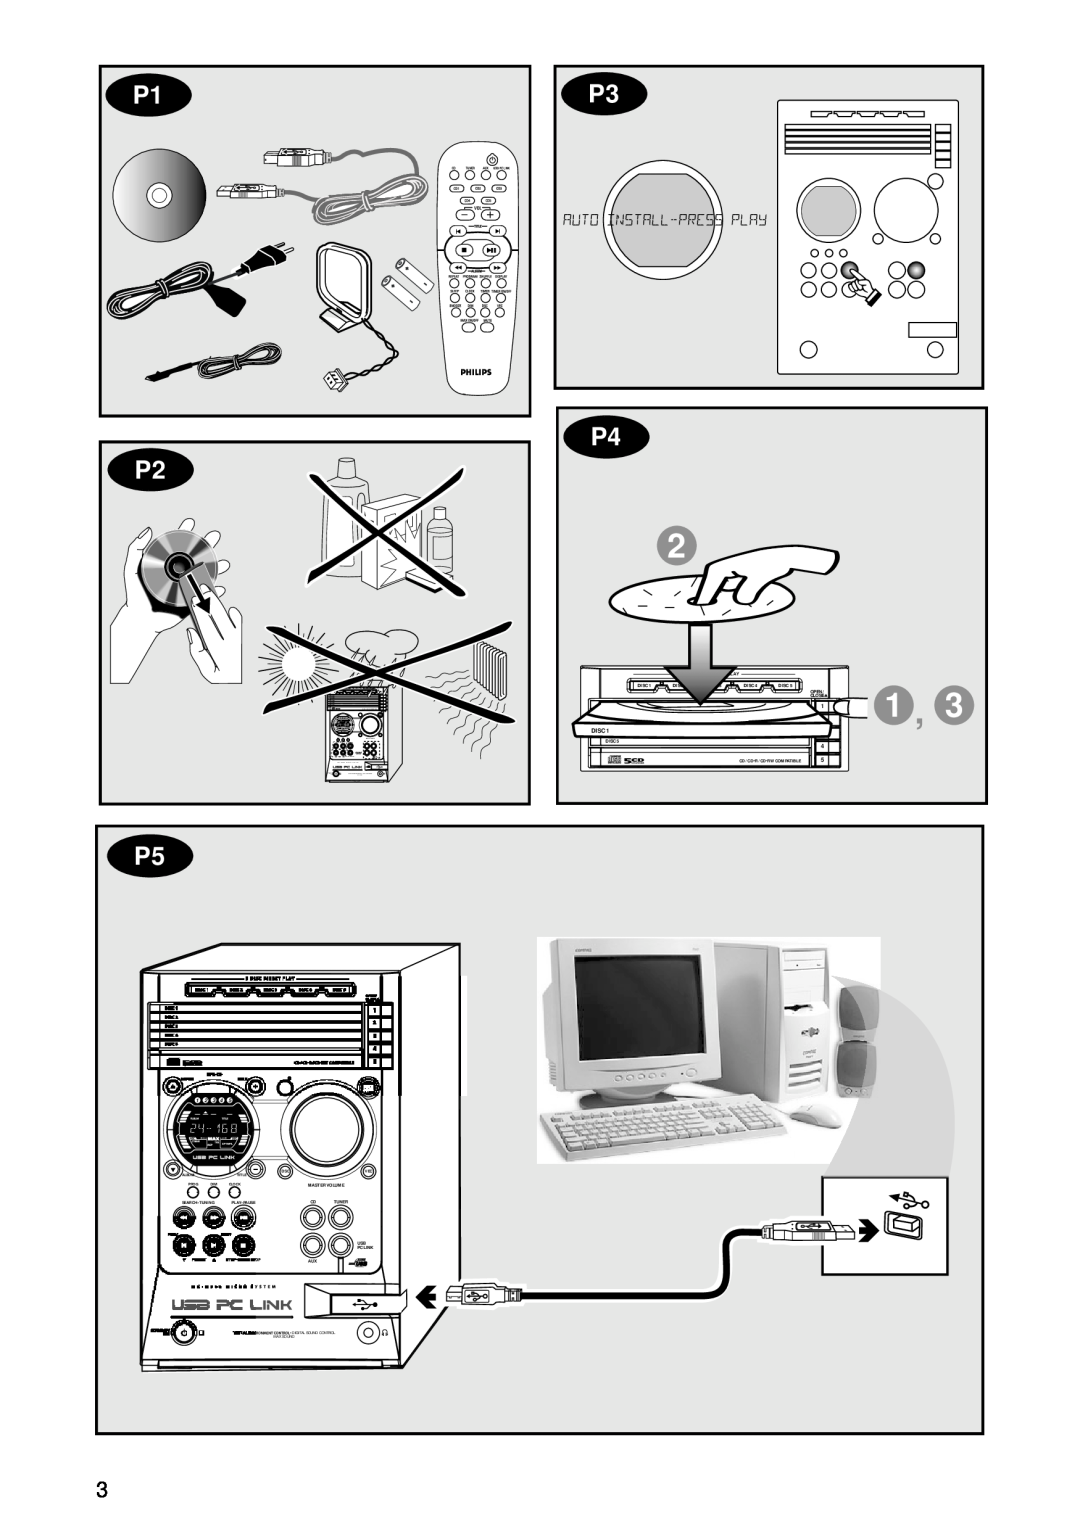 Philips MC-M570 manual P1 P2, P3 P4 